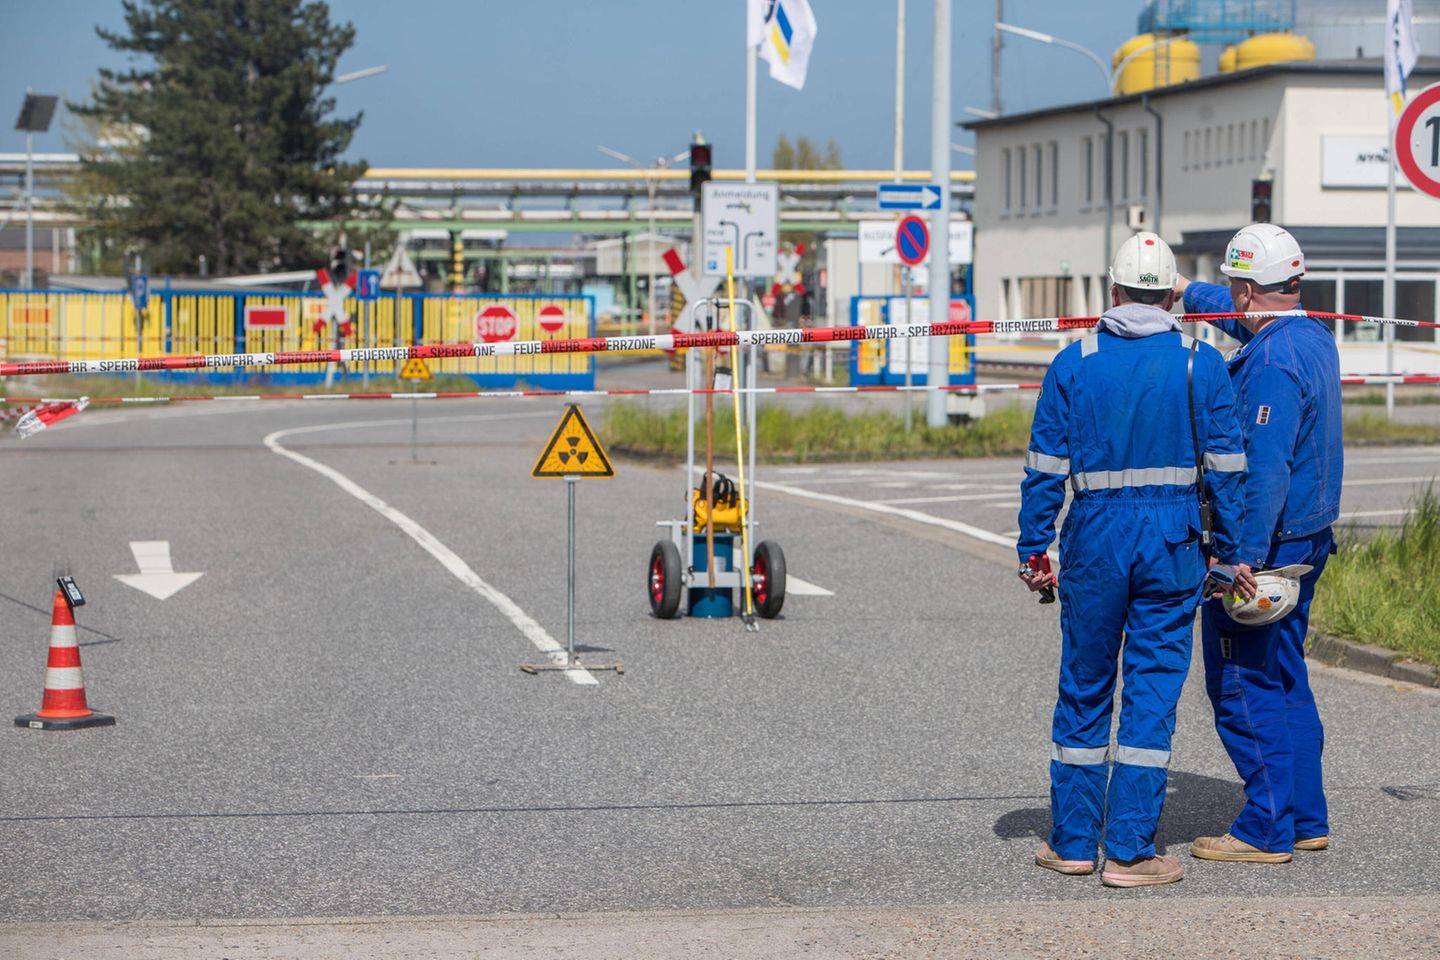 Nynas ist ein schwedischer Ölkonzern mit einem Standort in Hamburg. Die Bitumen-Raffinerie spielt allerdings für den Mineralölmarkt keine Rolle. 1,8 Millionen Tonnen Rohöl werden dort pro Jahr verarbeitet.